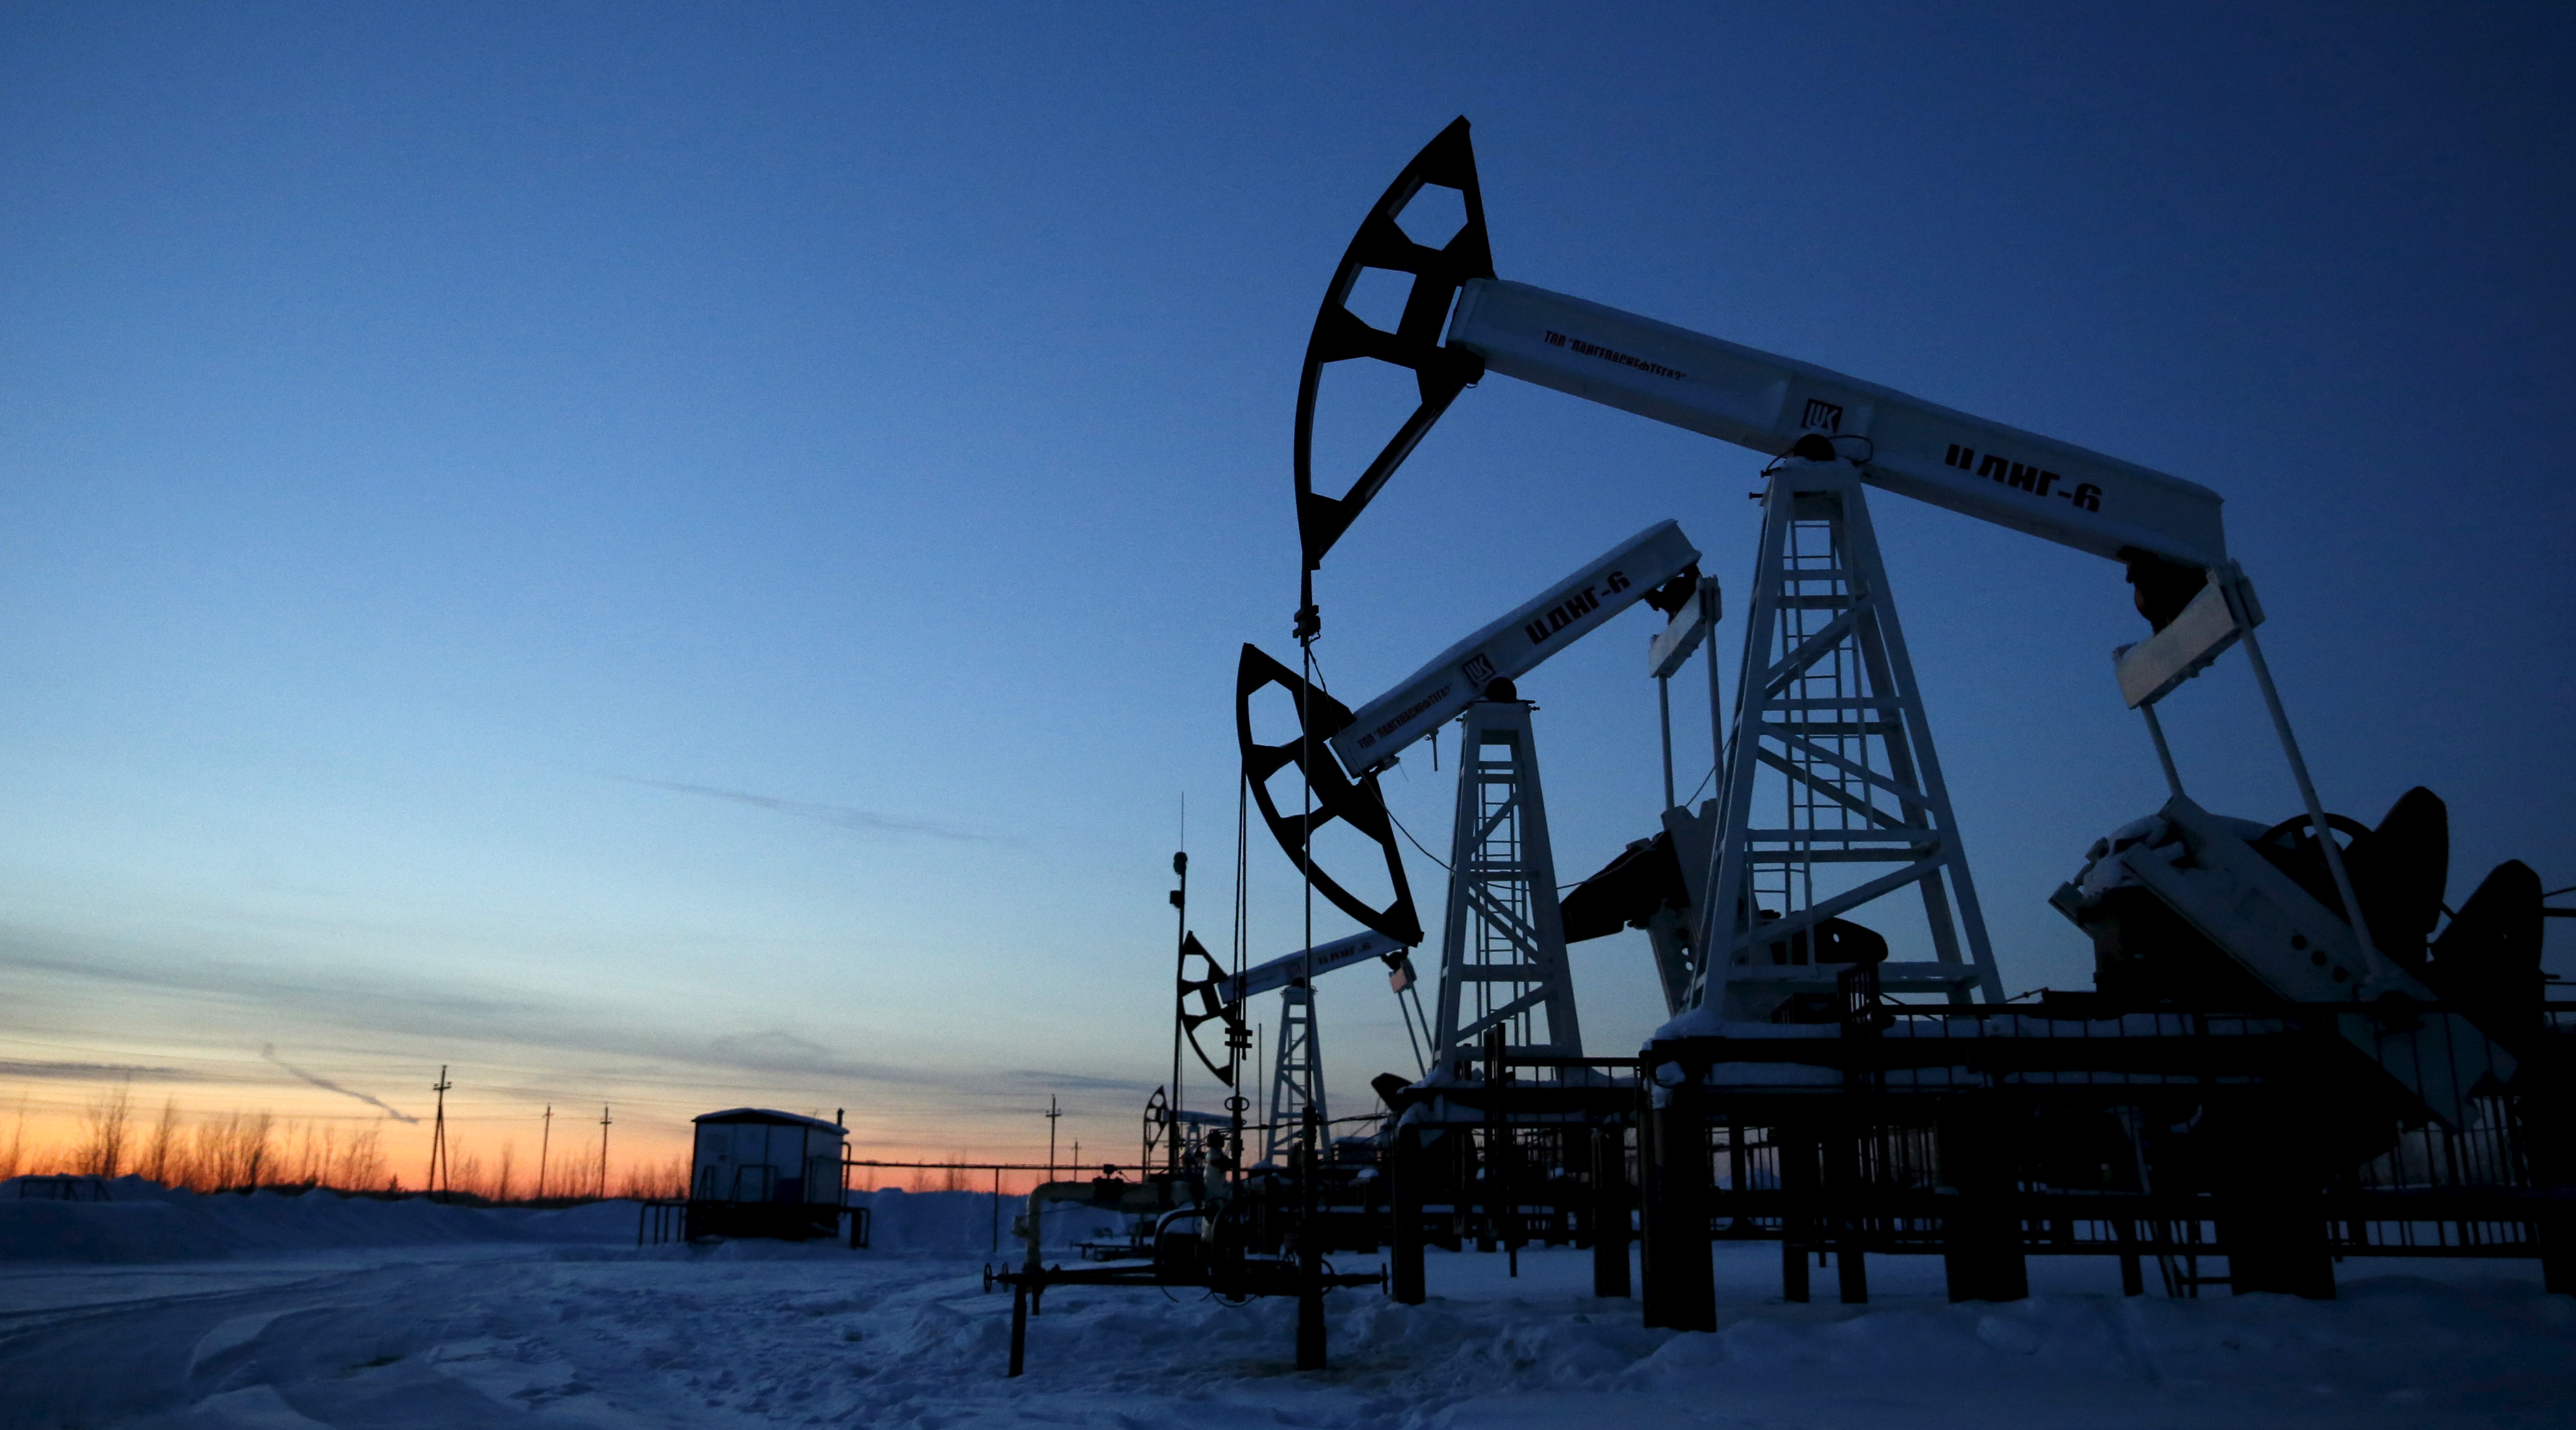 Нефтяная десятка. Западно-Сибирский нефтегазовый комплекс. Западно Сибирское месторождение нефти. Сибирь - нефтяное месторождение - вышка нефтяная.. Западно-Сибирская равнина добыча нефти.